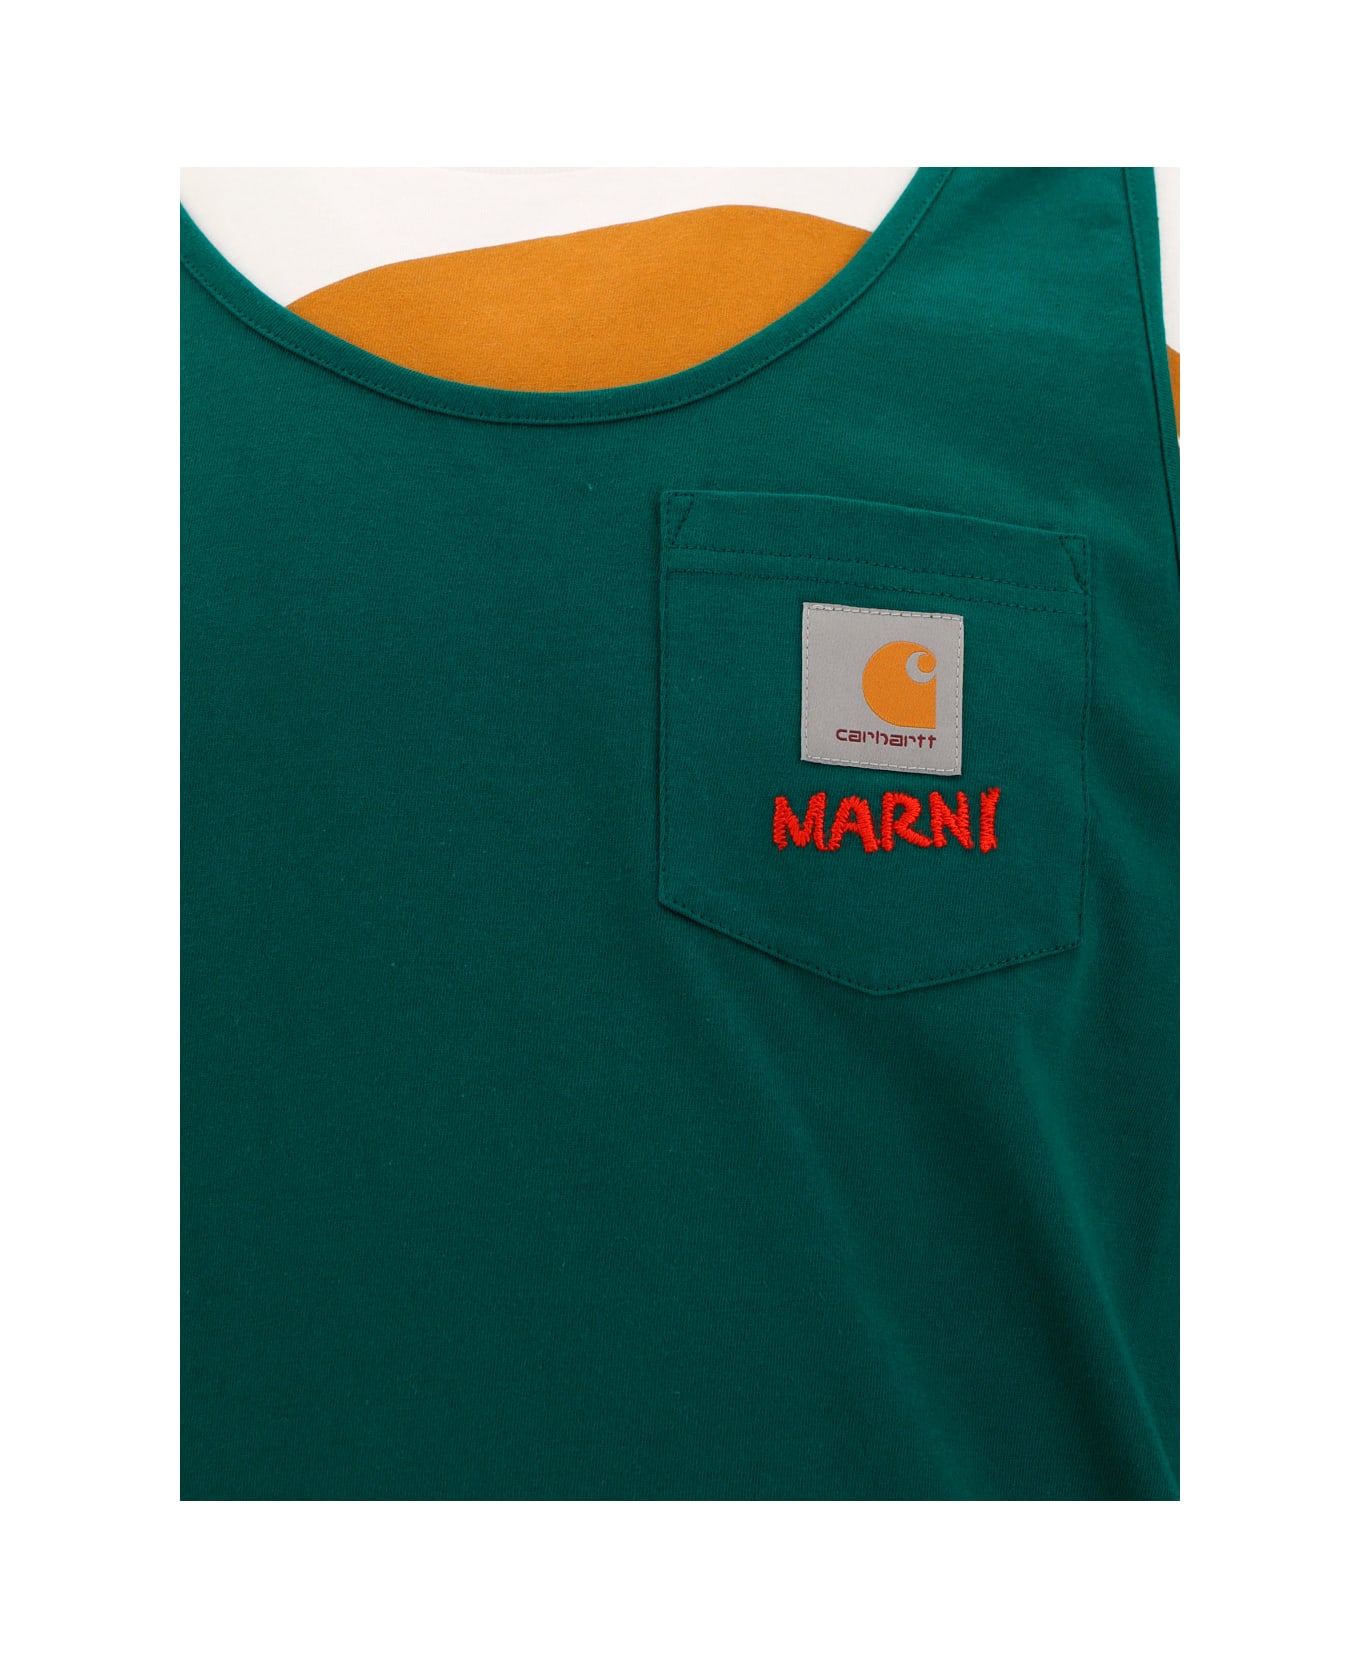 Marni X Carhartt T-shirt - Mlv66